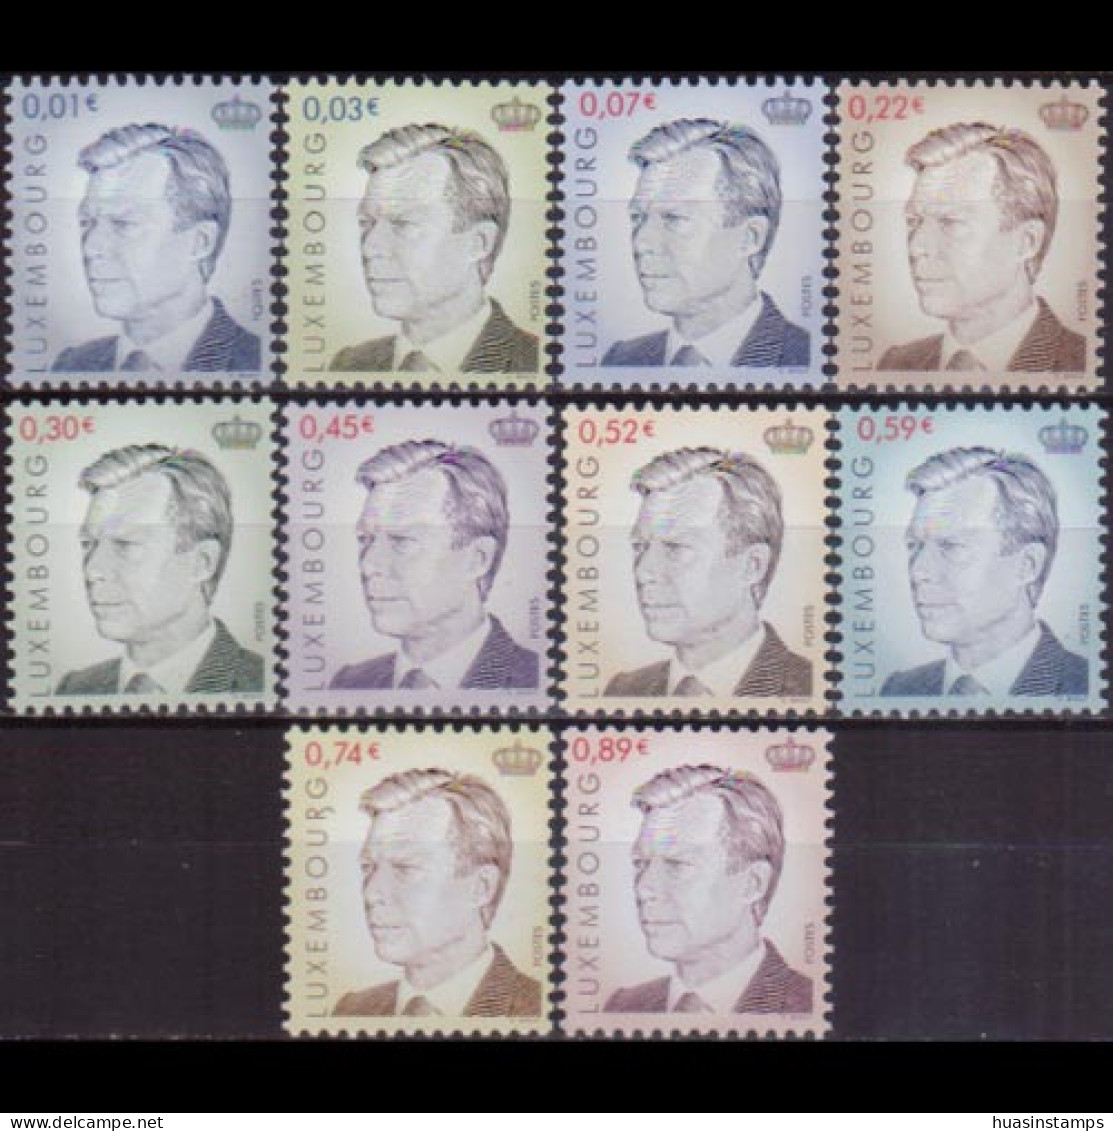 LUXEMBOURG 2001 - #1072-81 Grand Duke Henri Set Of 10 MNH - Nuevos